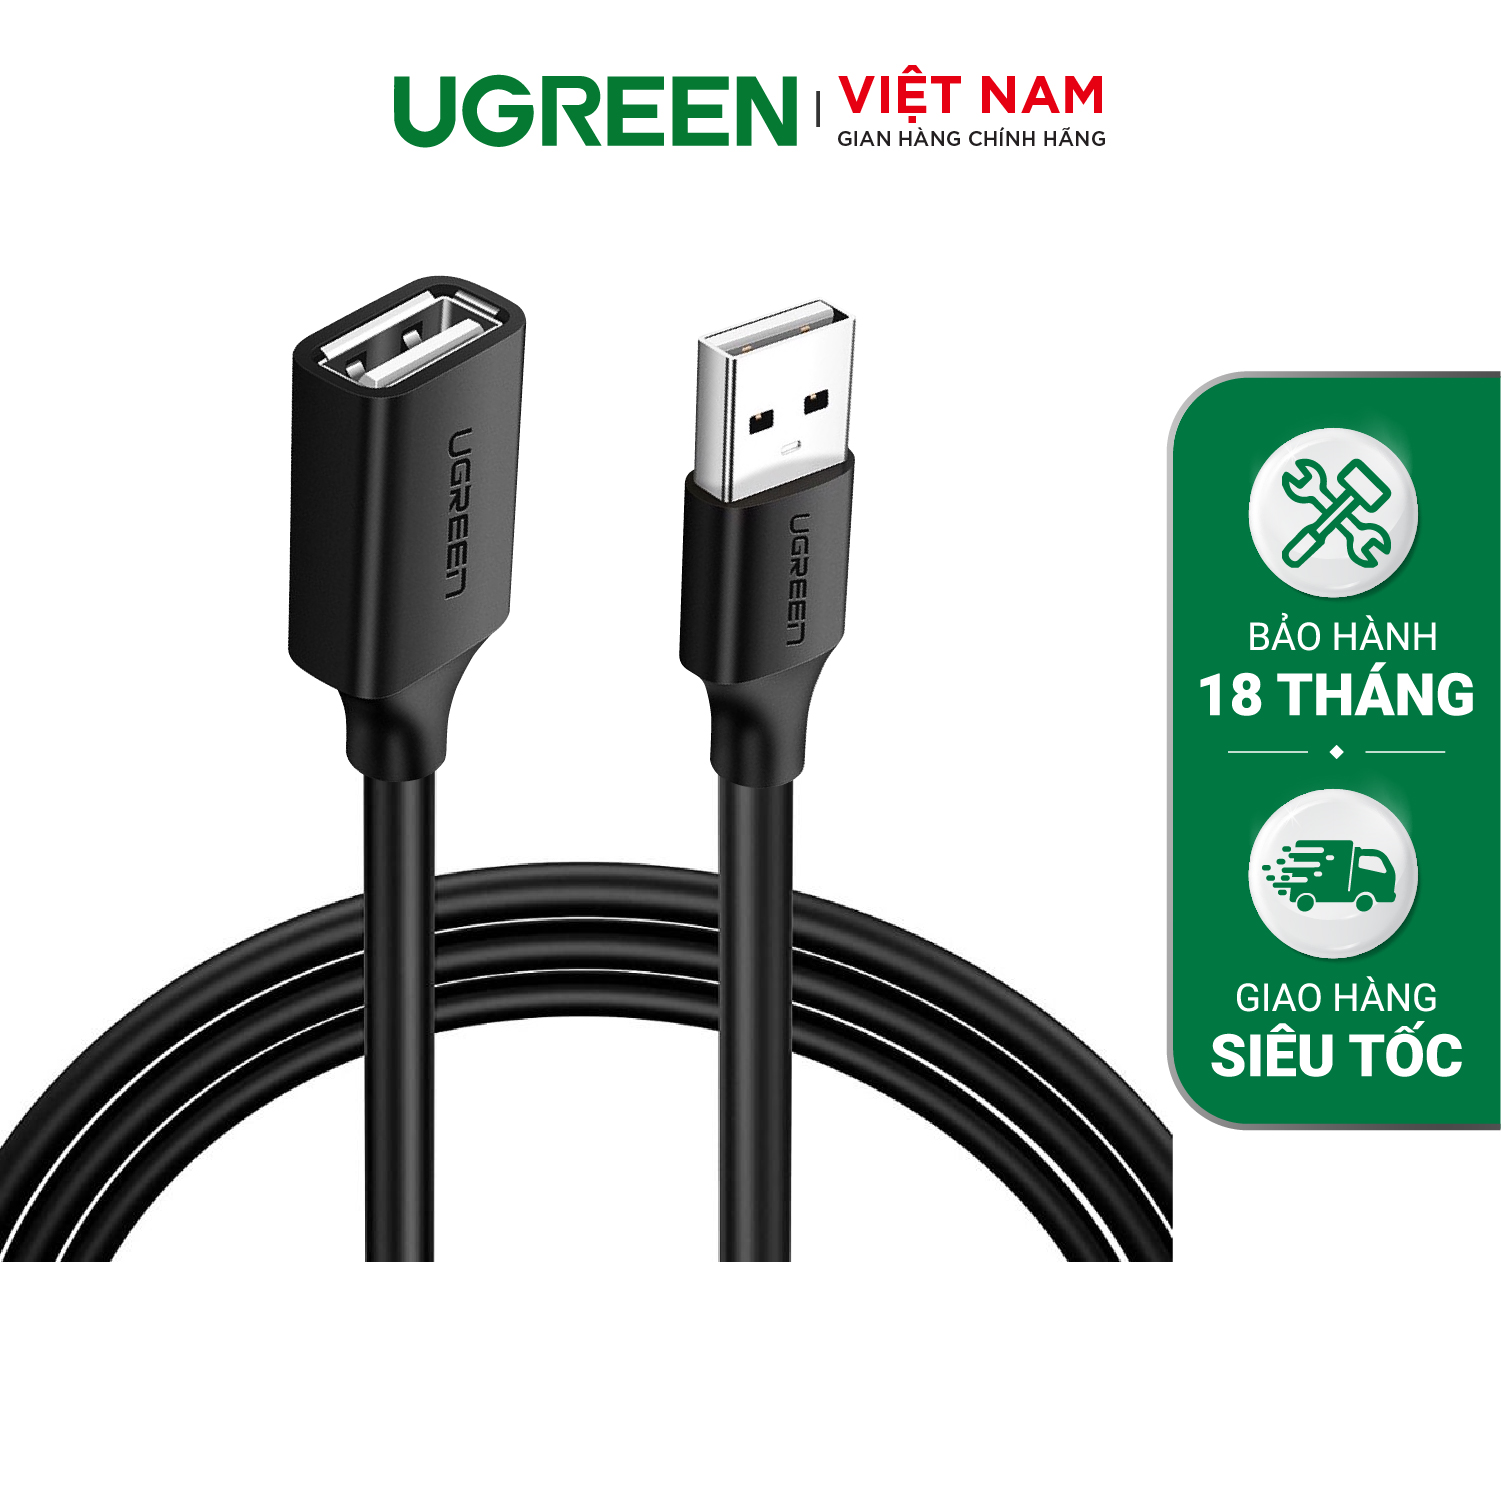 Hình ảnh Cáp Nối Dài Ugreen USB 2.0 10313 (0.5m) - Hàng Chính Hãng